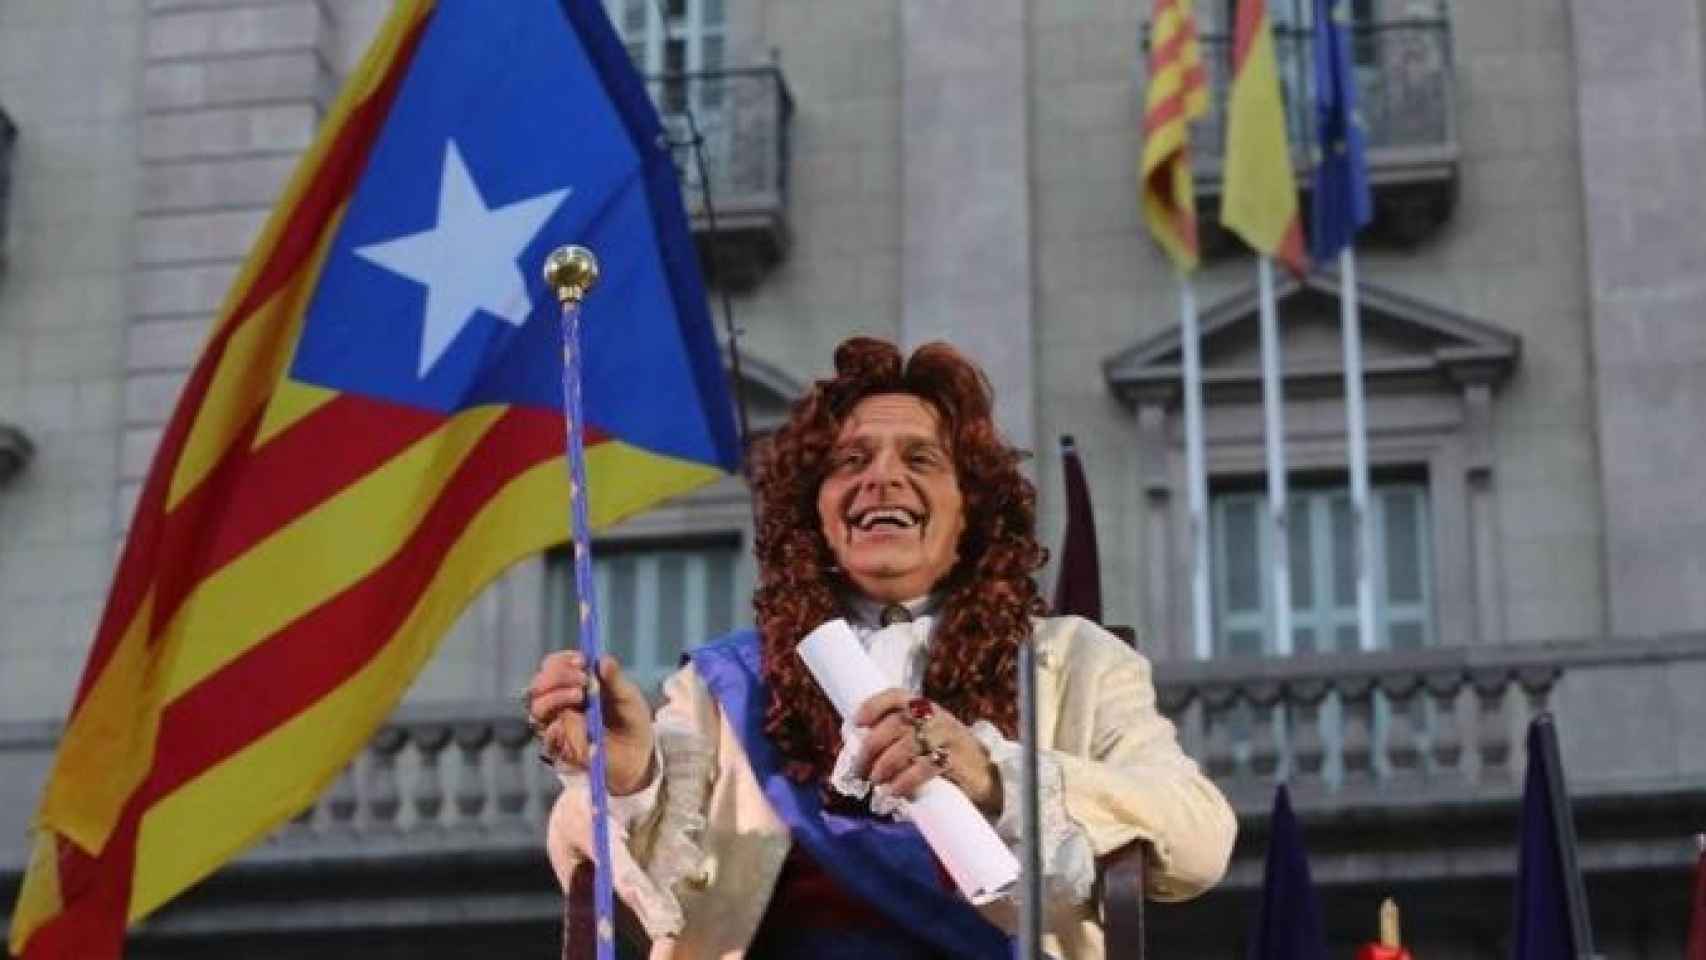 Toni Albà, cómico y humorista, durante un contrapregón independentista en Barcelona / EFE